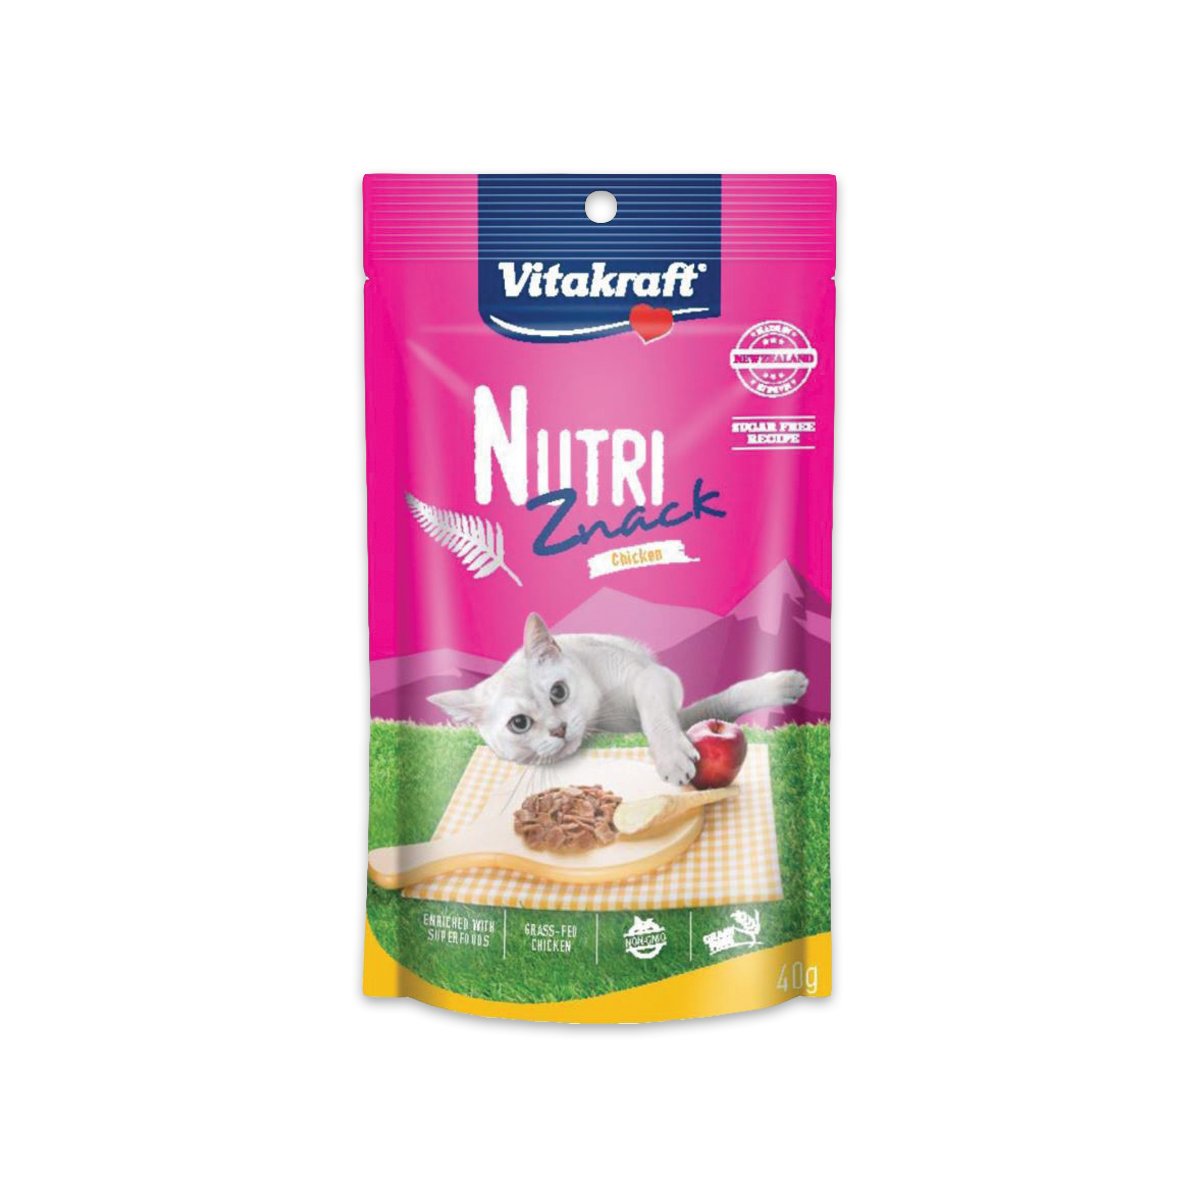 Vitakraft Nutri Znack ไวต้าคราฟ นูทริ สแน็ค ขนมแมวรสไก่ ขนาด 40 กรัม